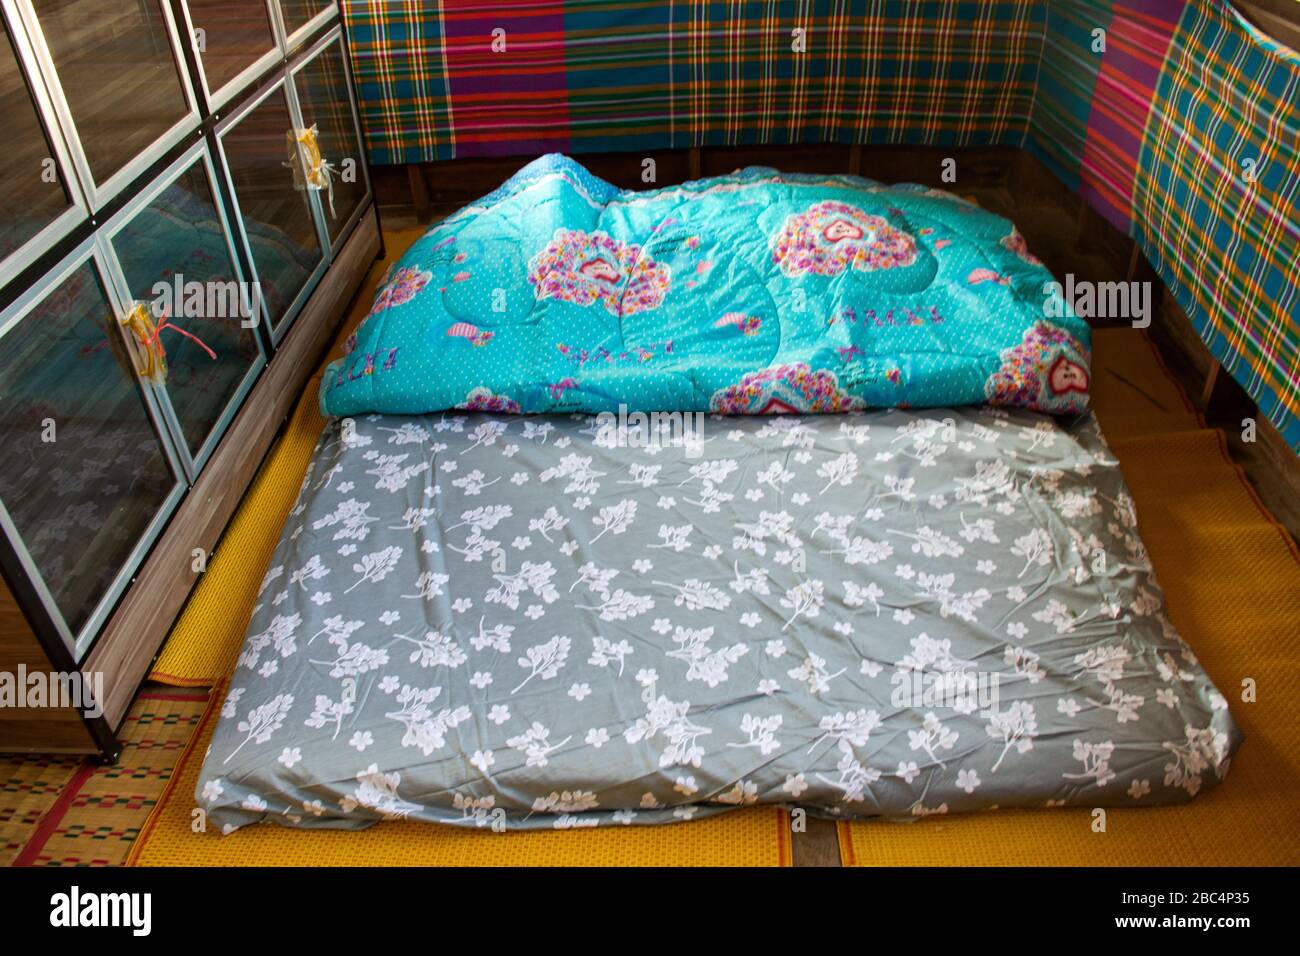 Bett im Vintage- und retro-thai-Stil im Schlafzimmer der verheirateten  traditionellen für Bräutigam und Brauttruhe zu Hause in Yasothon, Thailand  Stockfotografie - Alamy